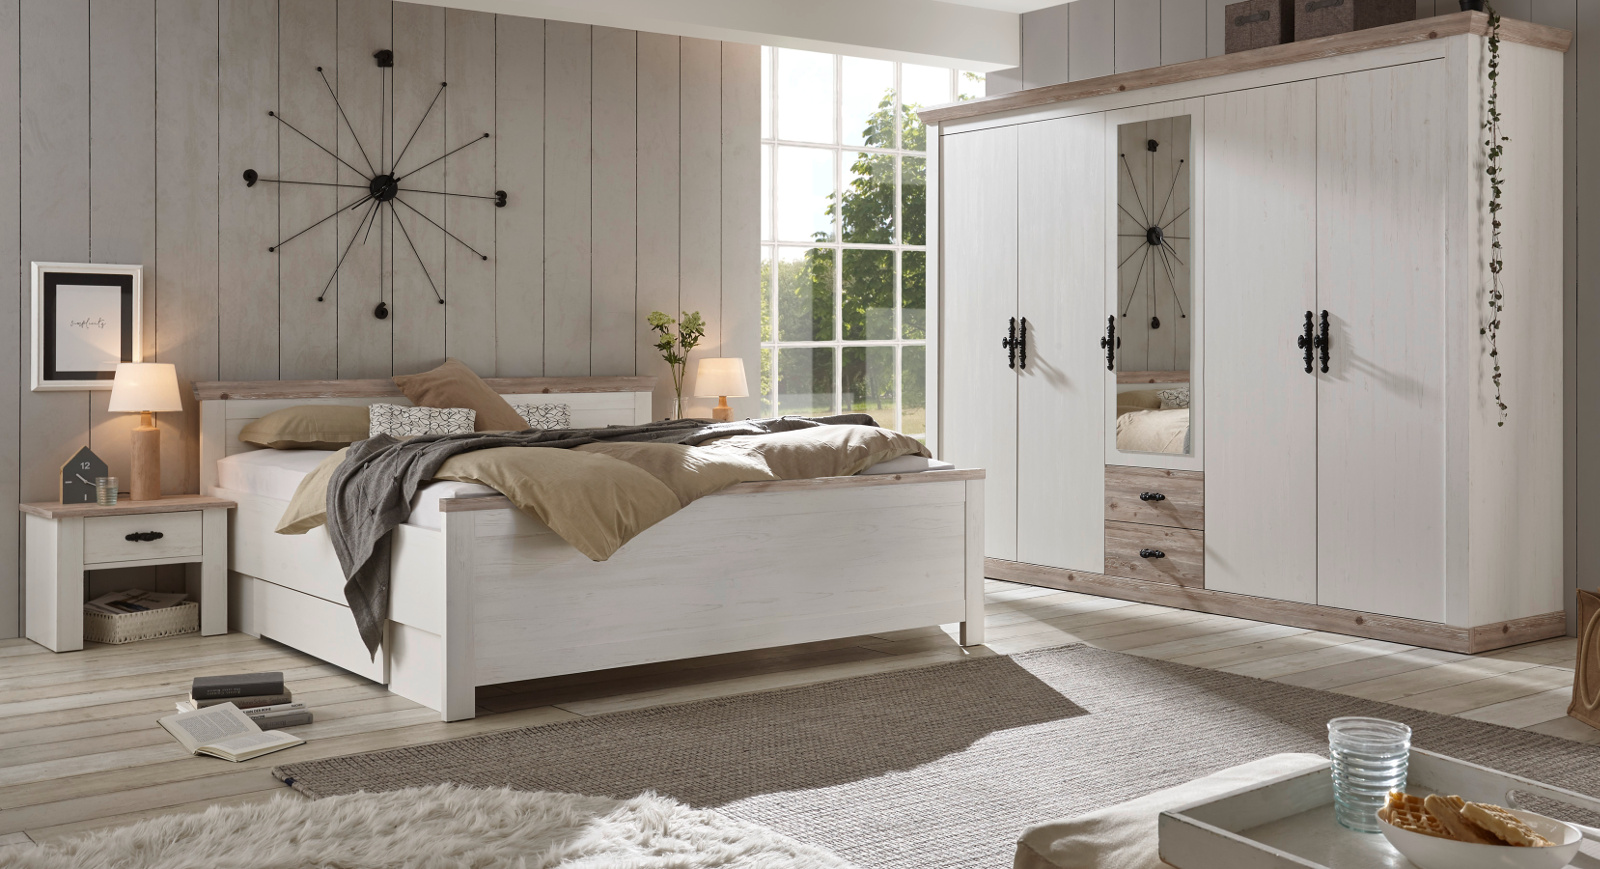 Schlafzimmer komplett "Rovola" in Pinie weiß / Oslo Pinie Landhaus Komplettzimmer mit Doppelbett, Kleiderschrank und 2 x Nachttisch